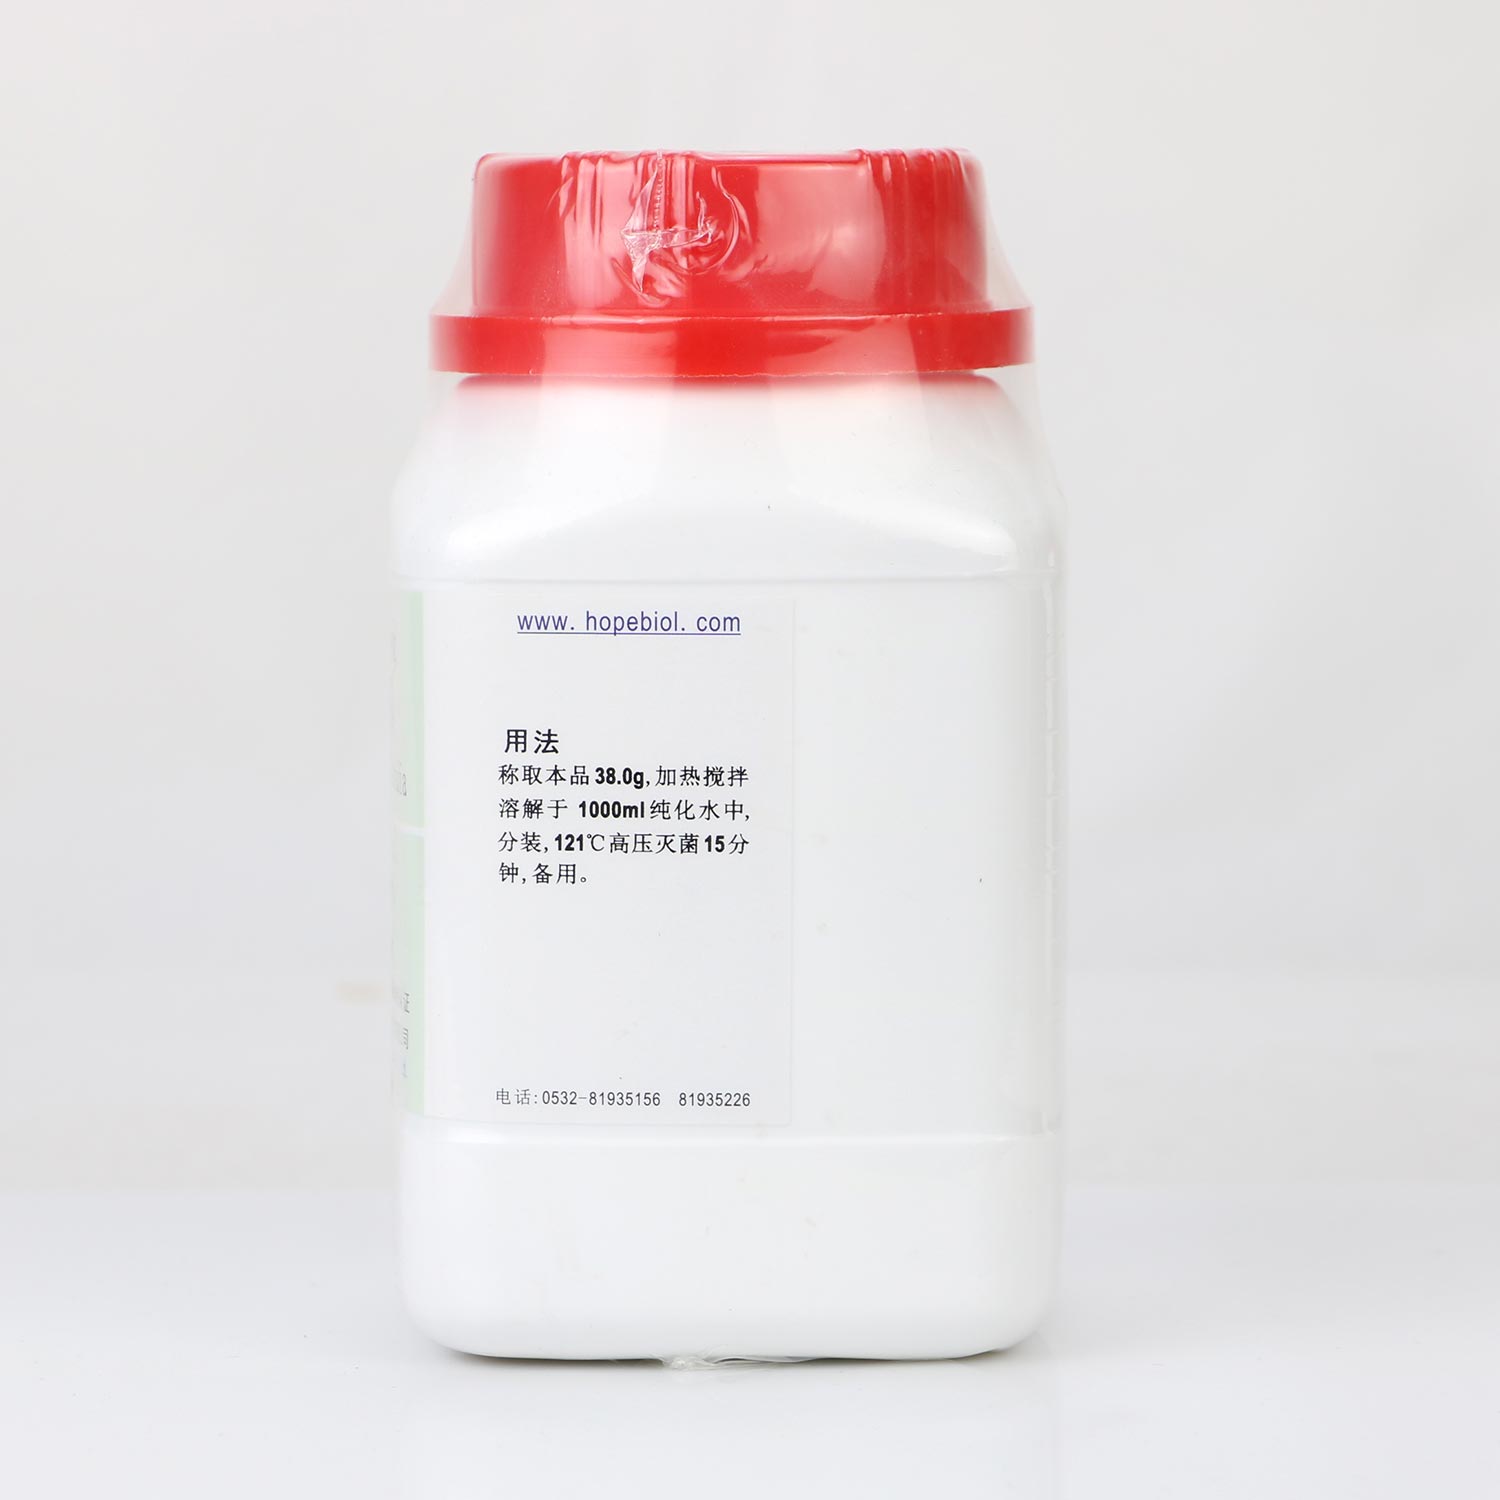 梭菌增菌培养基（中国药典）(颗粒)用法